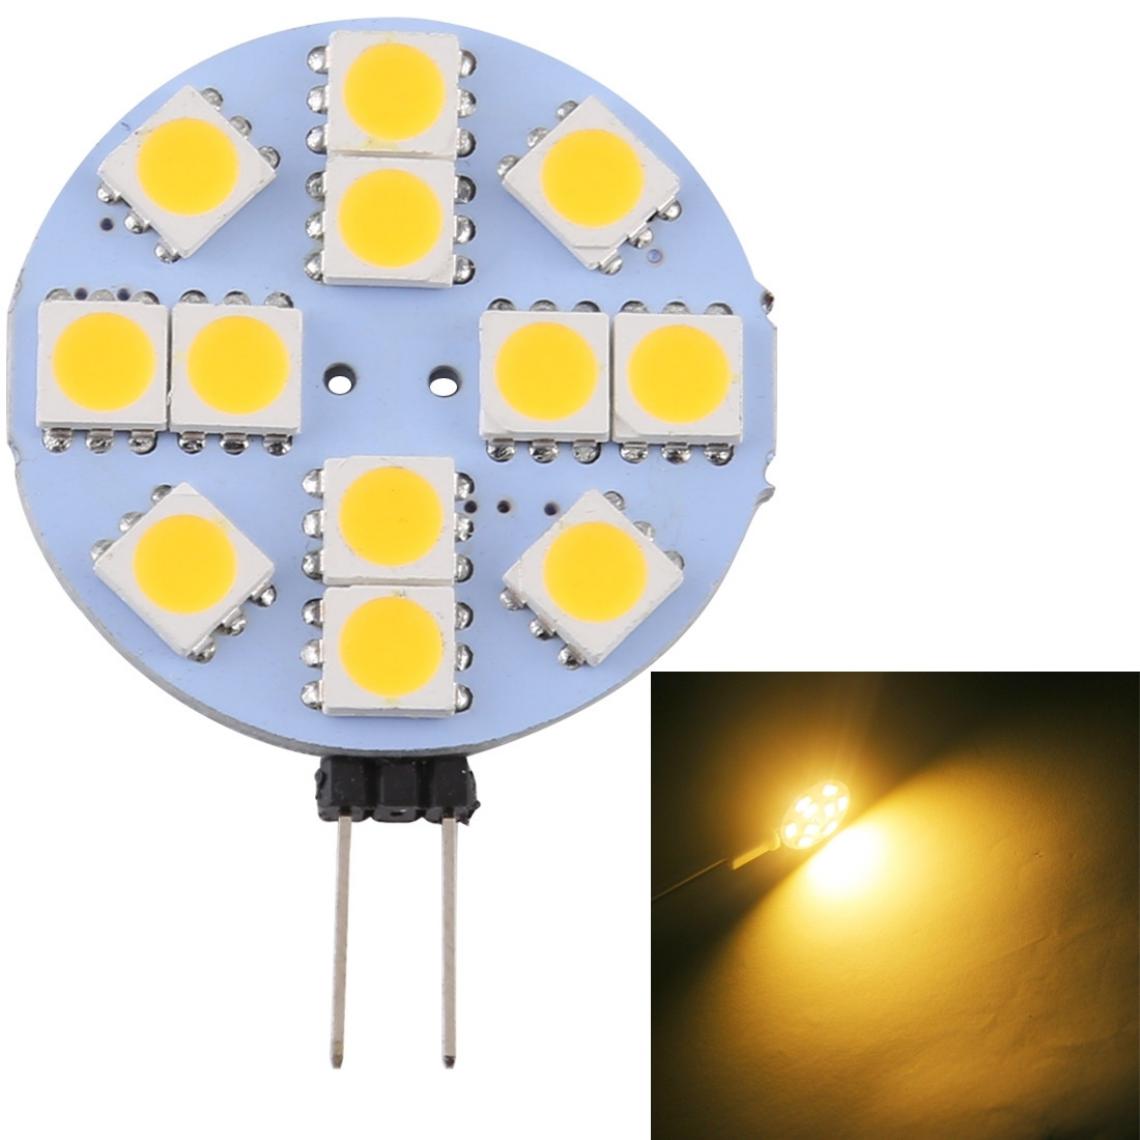 Wewoo - G4 12 LEDs SMD 5050 144LM 2800-3200K Ampoule de lampe à base de broche à économie d'énergie à intensité variableDC 12V blanc chaud - Ampoules LED